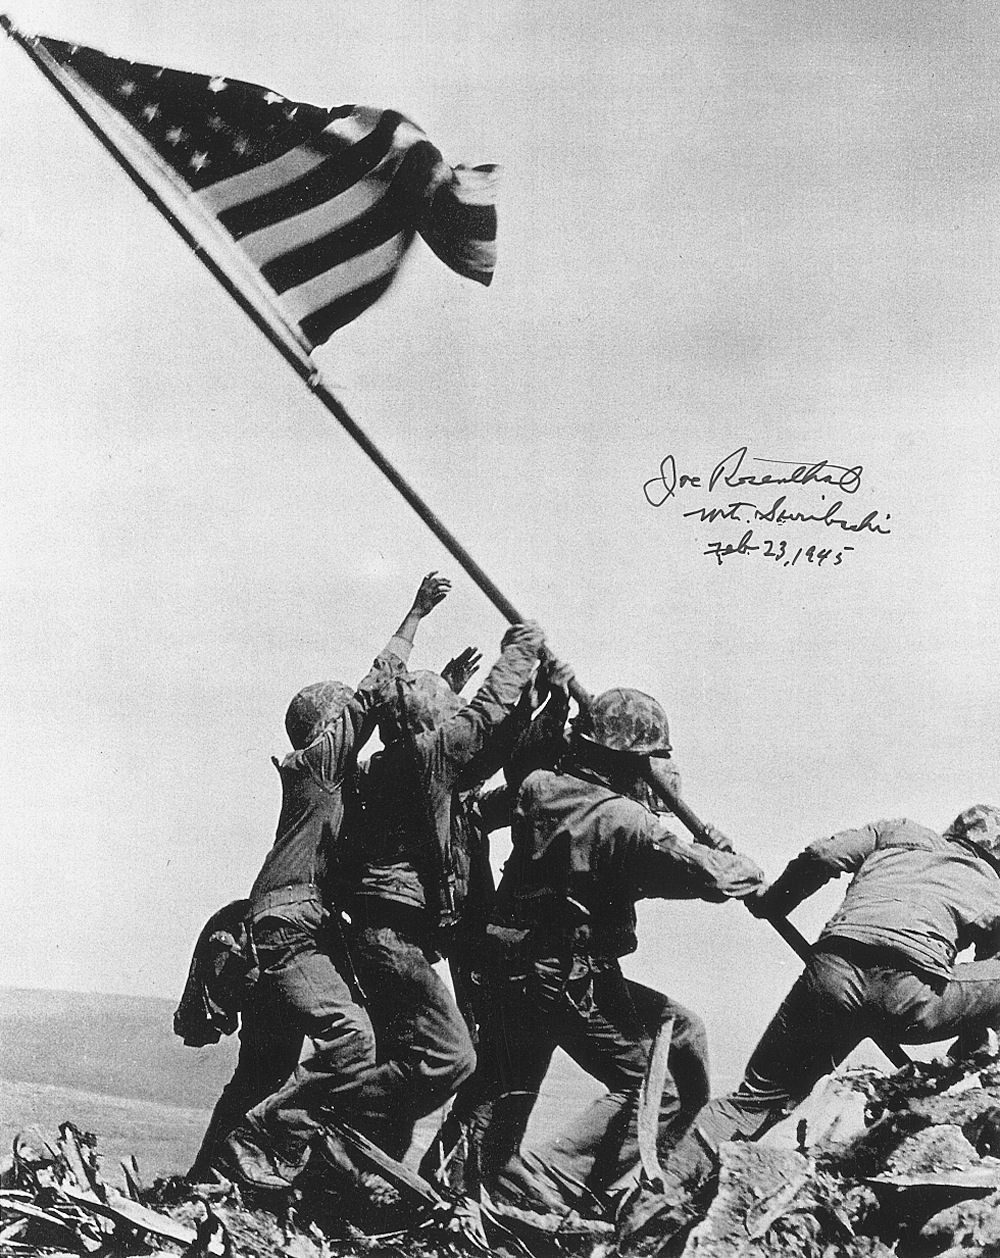 Lot #389 Iwo Jima: Joe Rosenthal